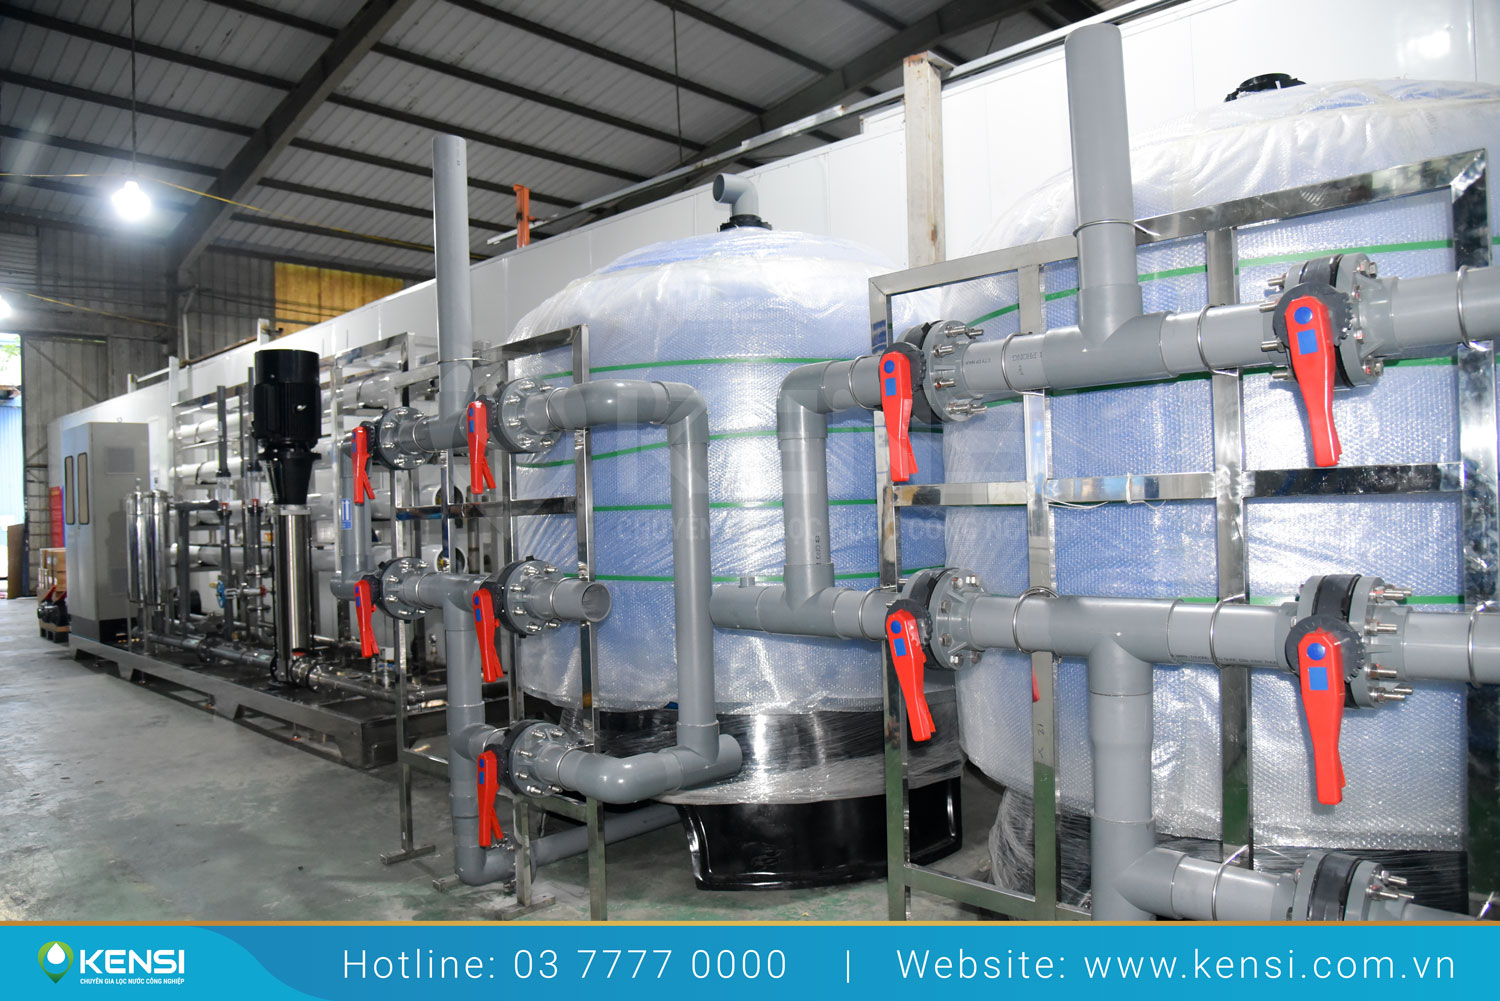 Tekcom cung cấp thiết bị và giải pháp lọc nước cho sản xuất công nghiệp